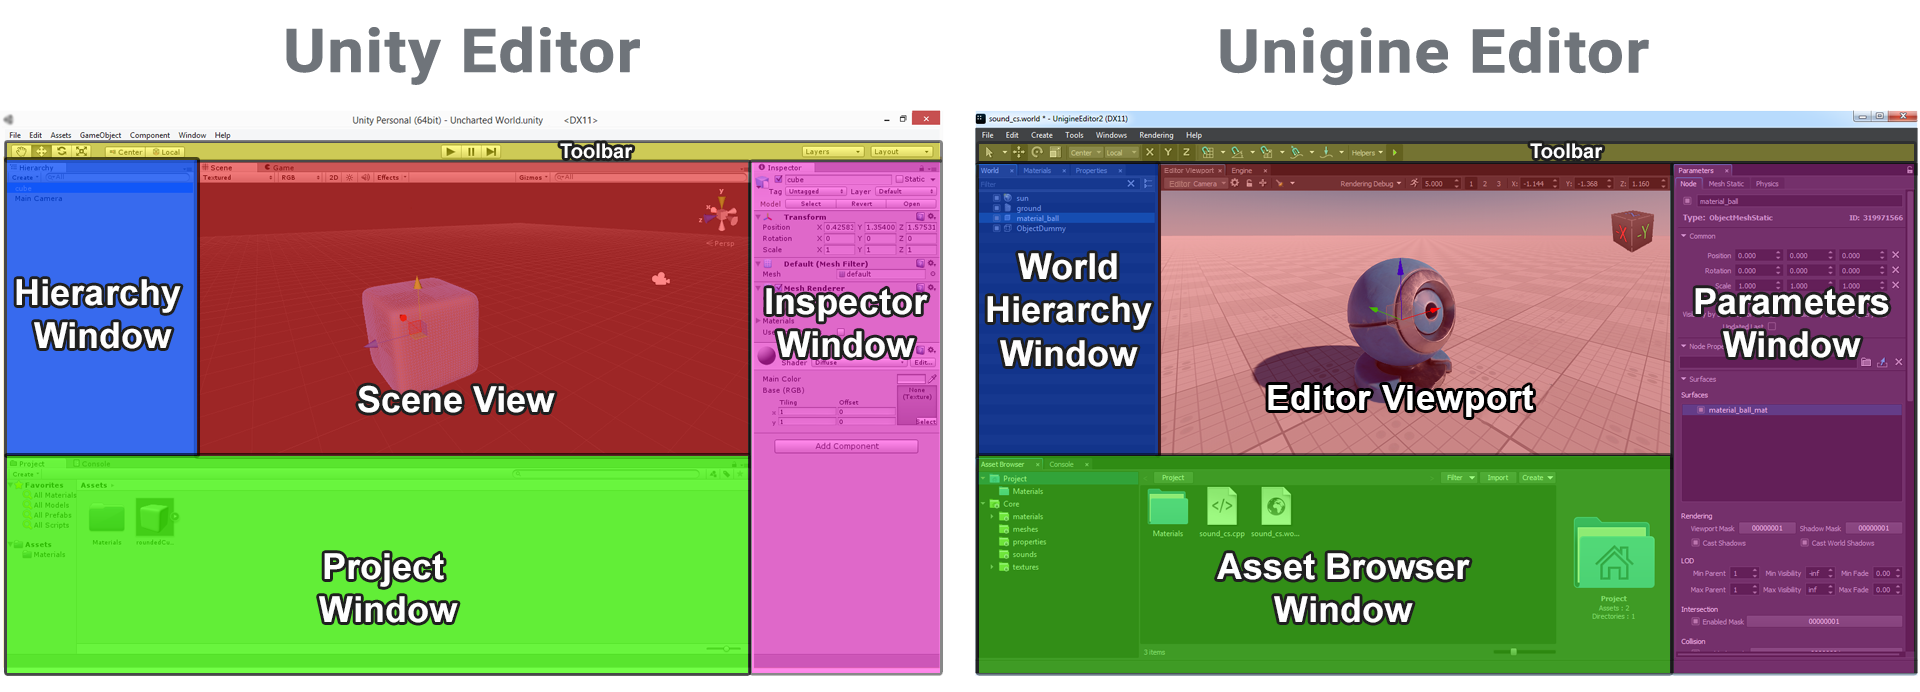 Сравнение пользовательского интерфейса редакторов Unity и UnigineEditor (нажмите, чтобы увеличить)